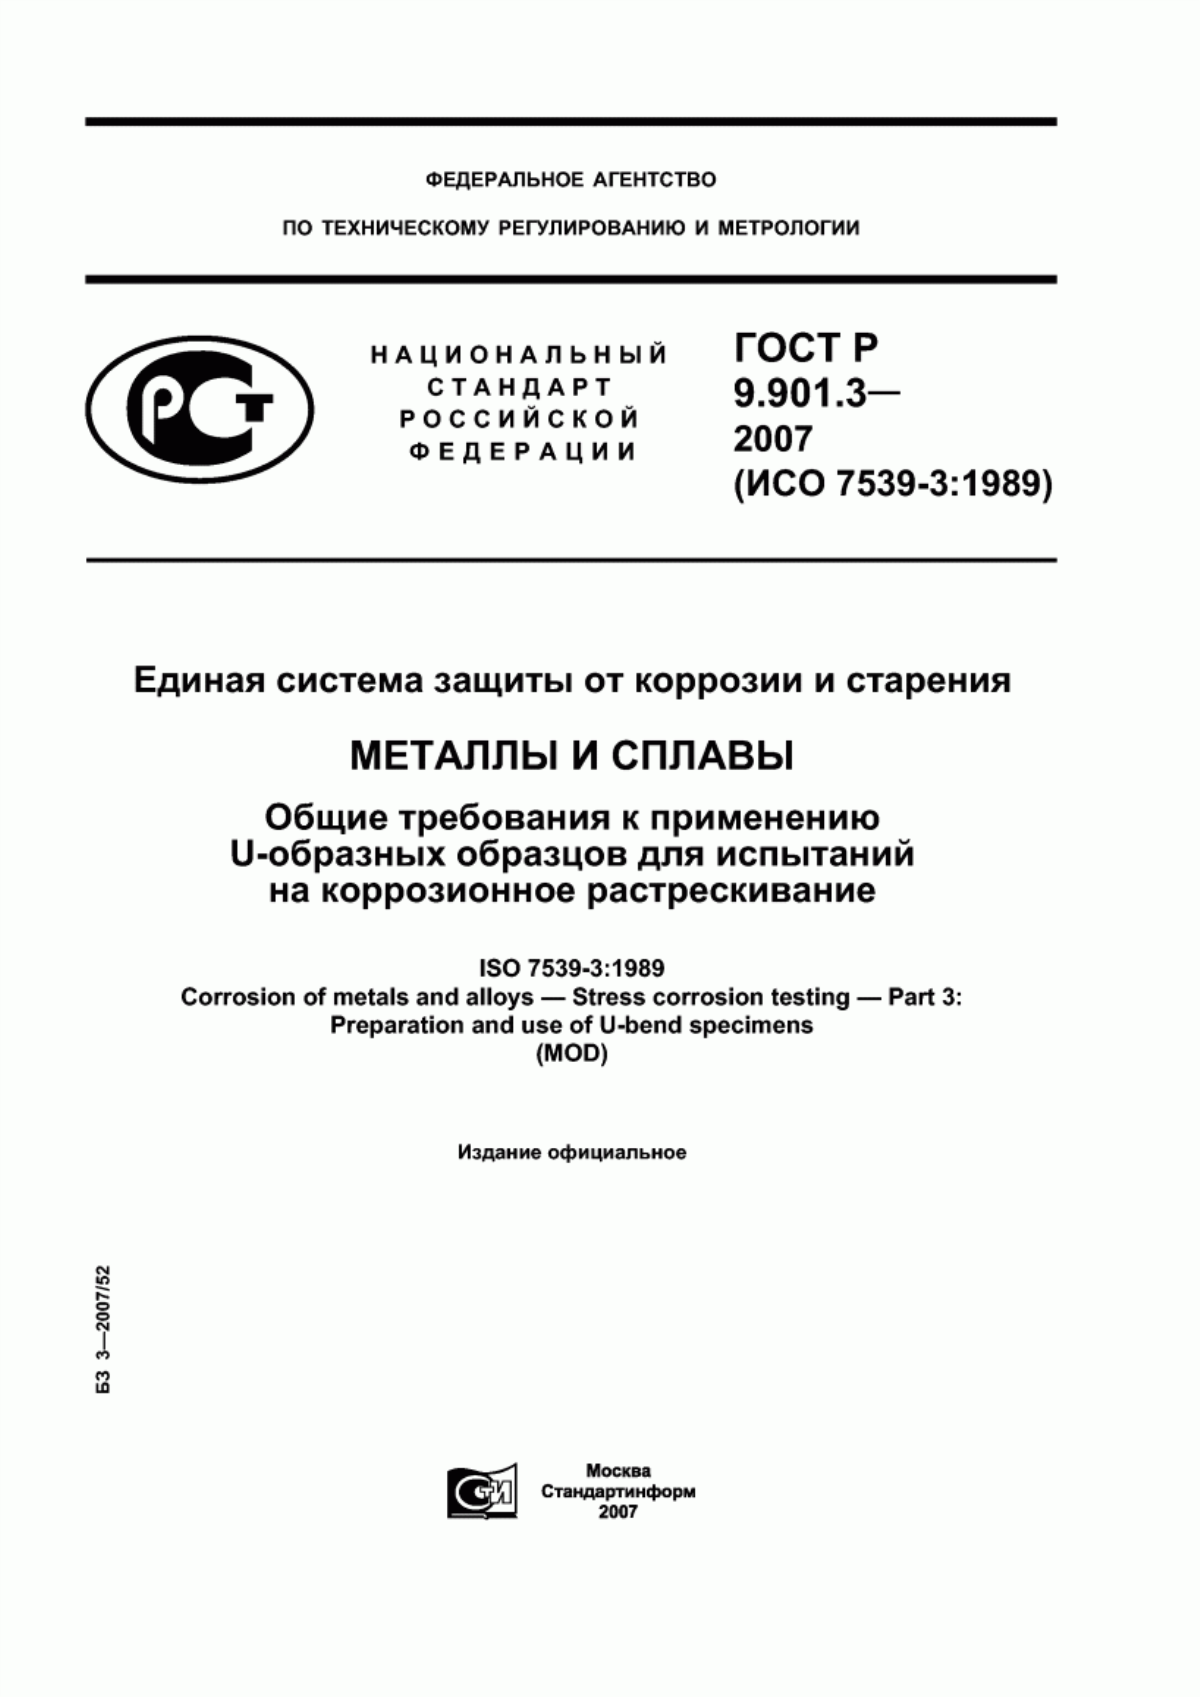 ГОСТ Р 9.901.3-2007 Единая система защиты от коррозии и старения. Металлы и сплавы. Общие требования к применению U-образных образцов для испытаний на коррозионное растрескивание